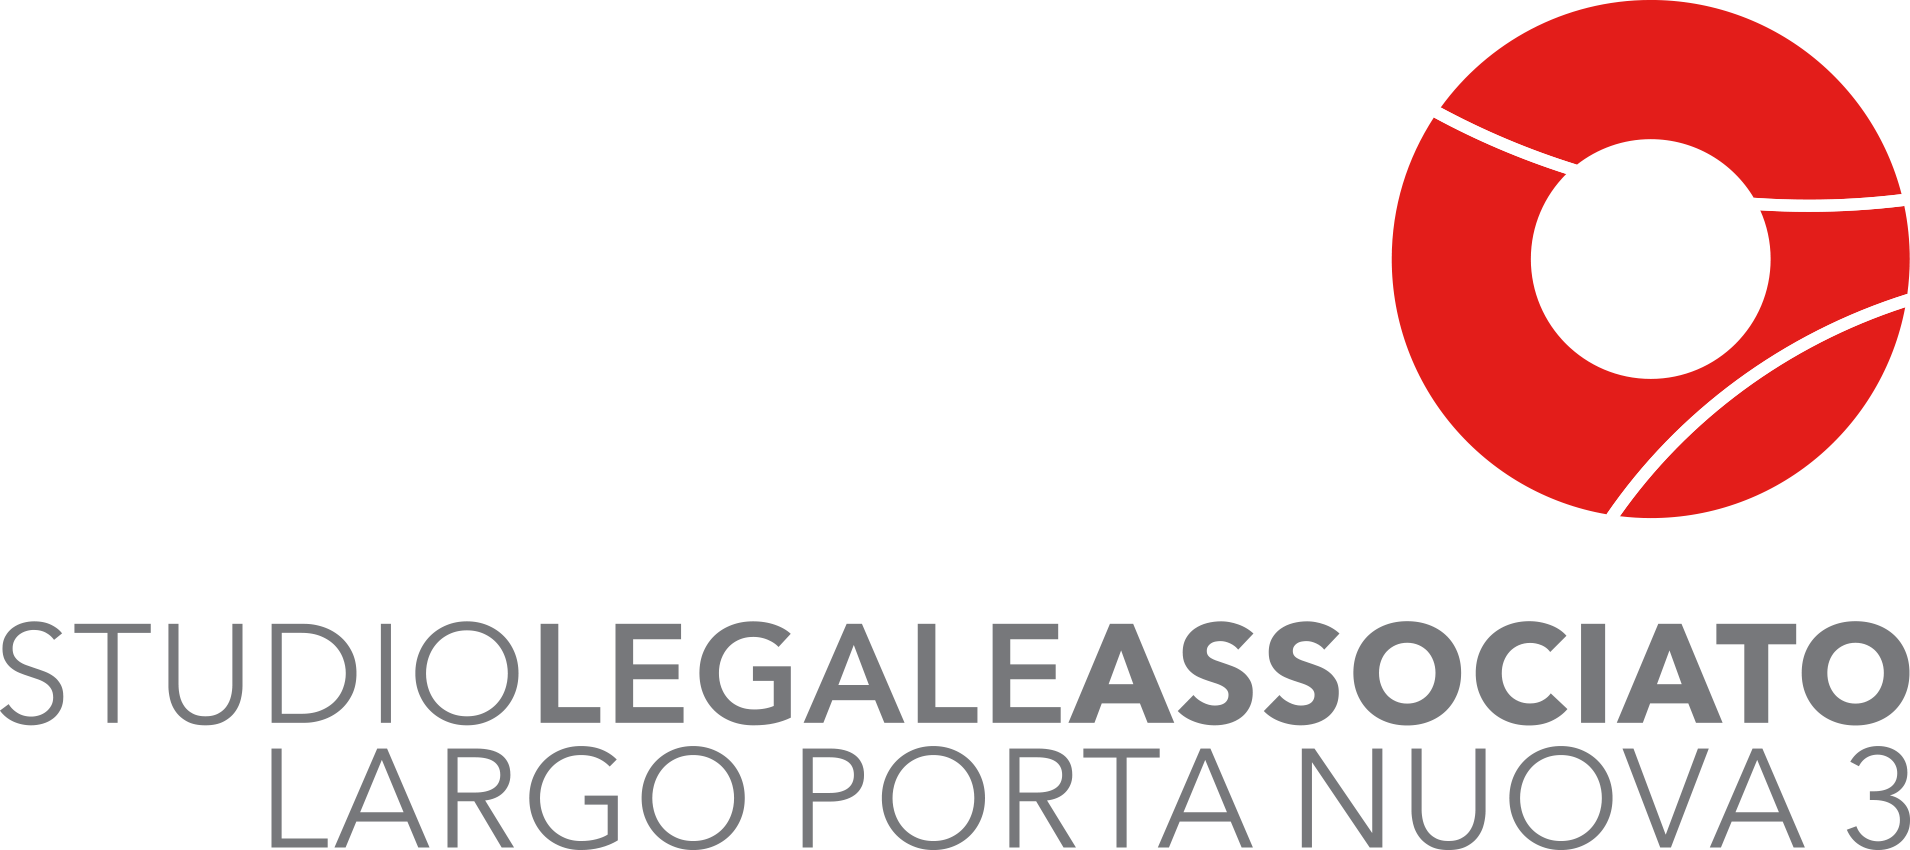 Il Team, Studio Legale Associato Largo Porta Nuova, Avvocati 